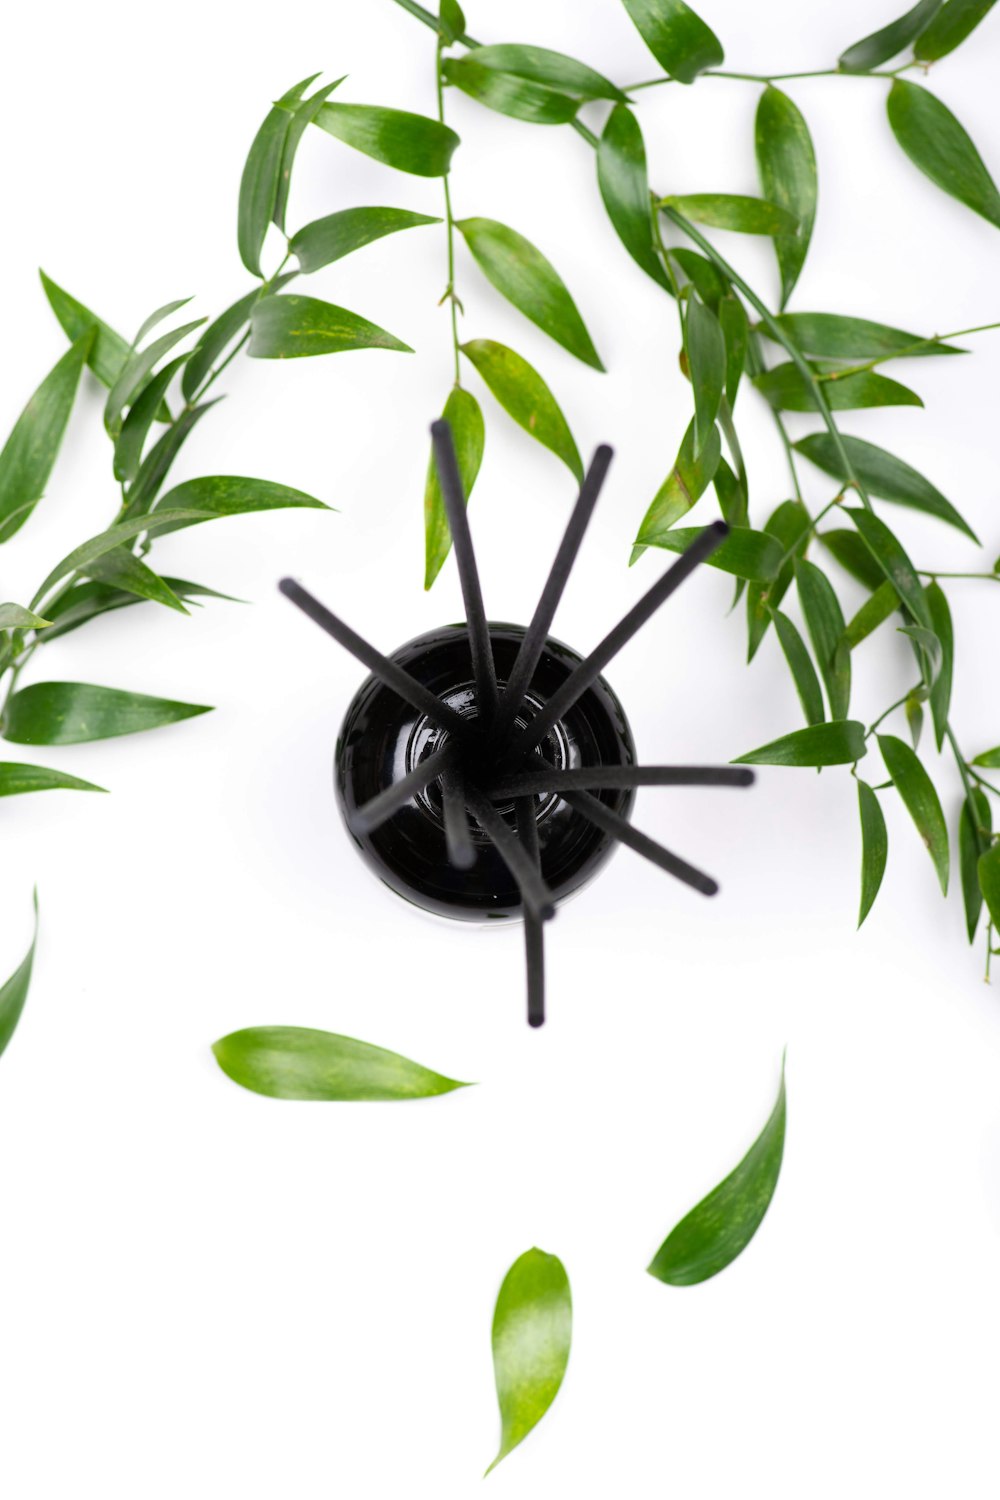 araignée noire sur feuilles vertes